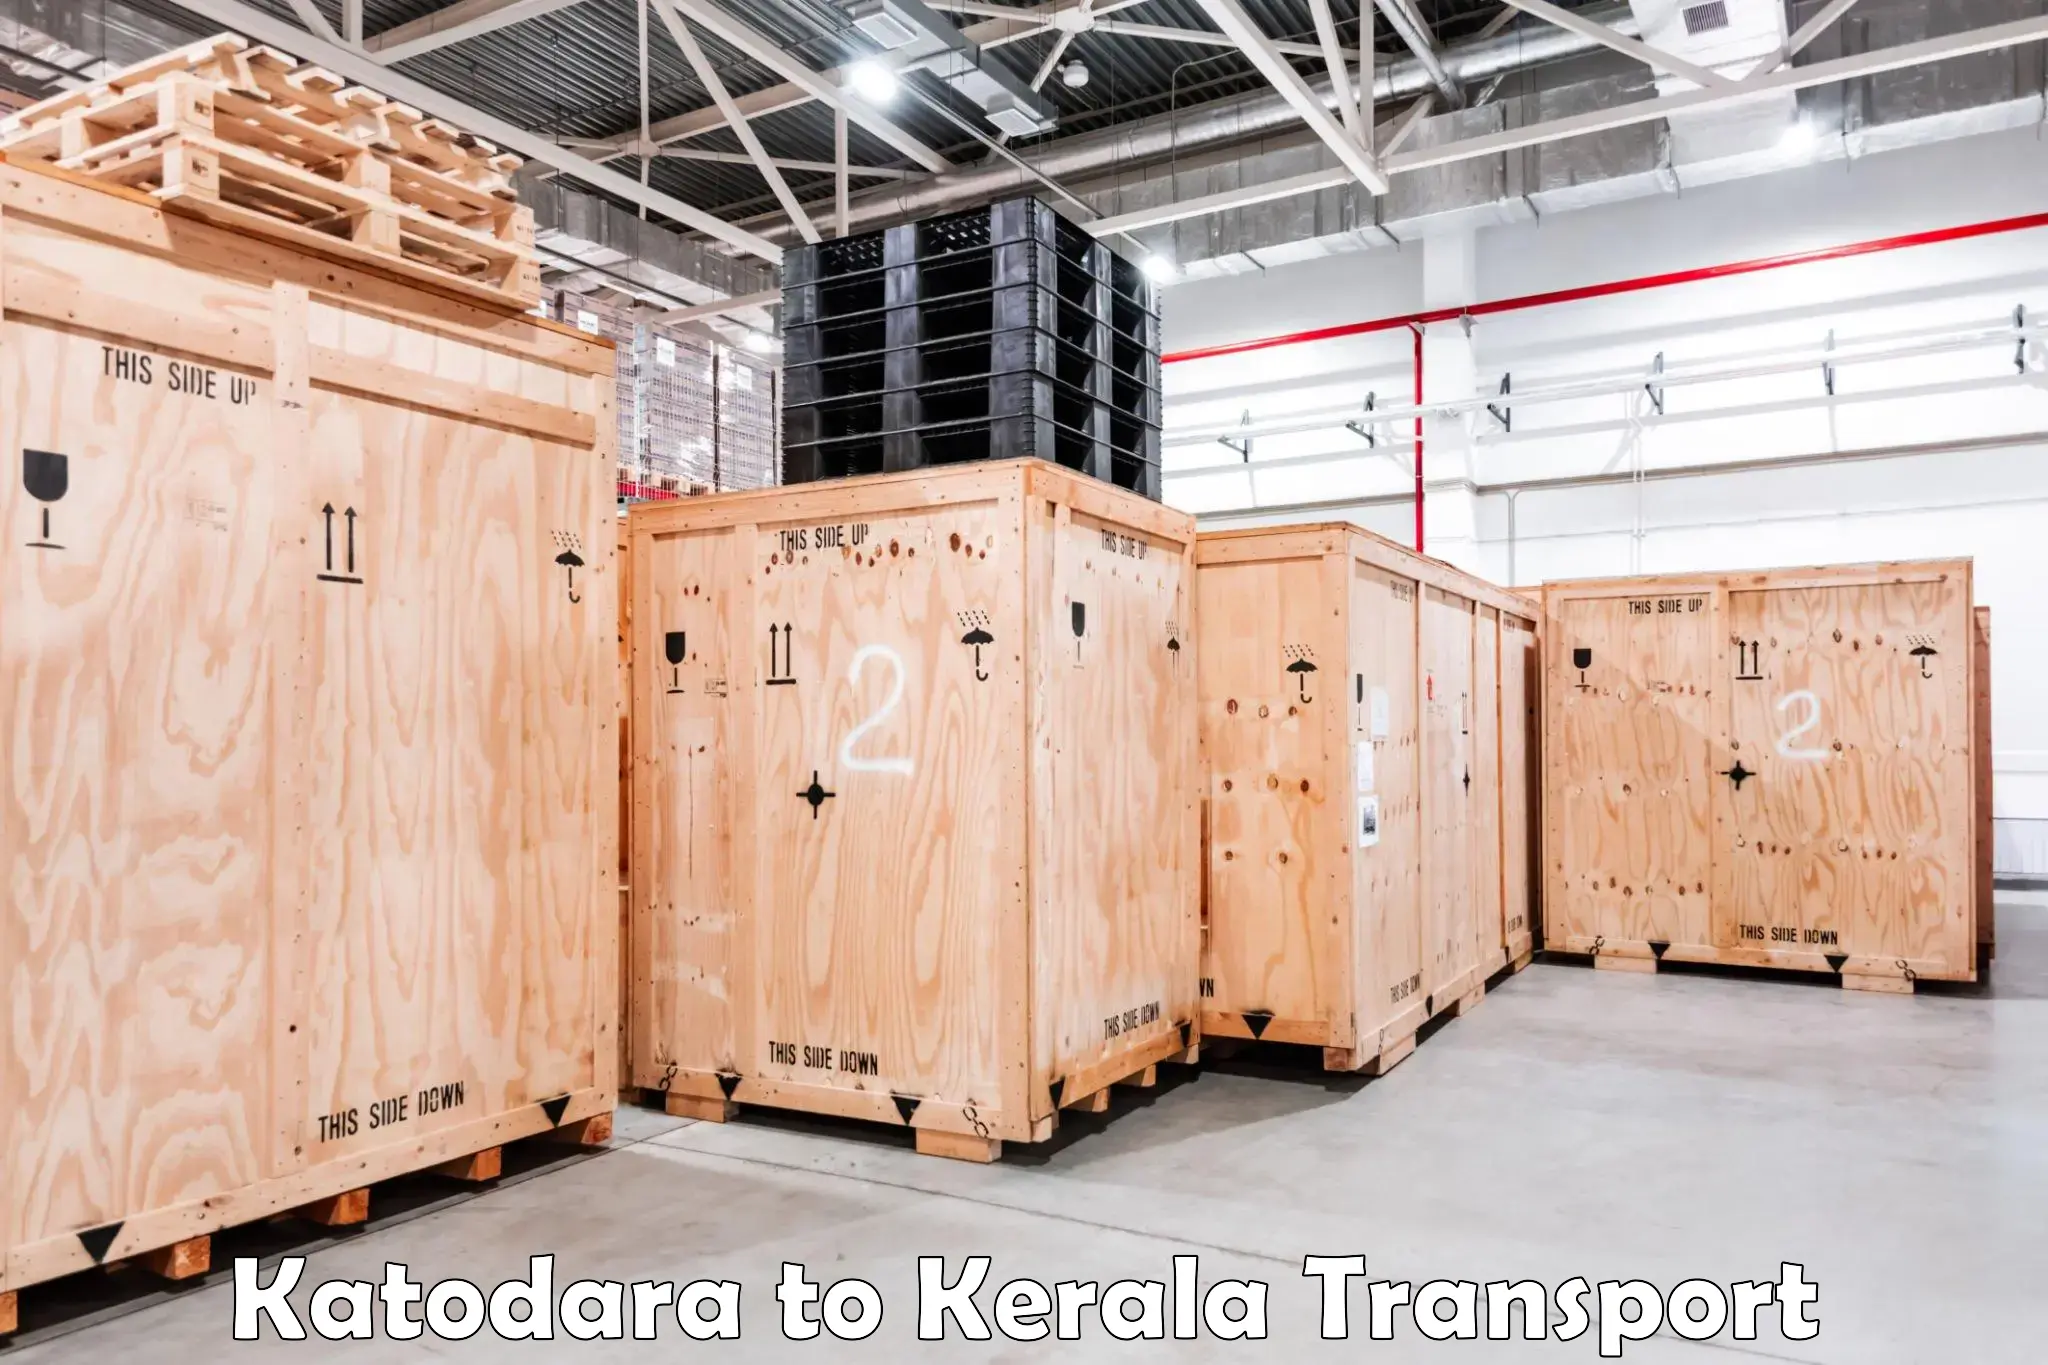 Land transport services in Katodara to Tirur